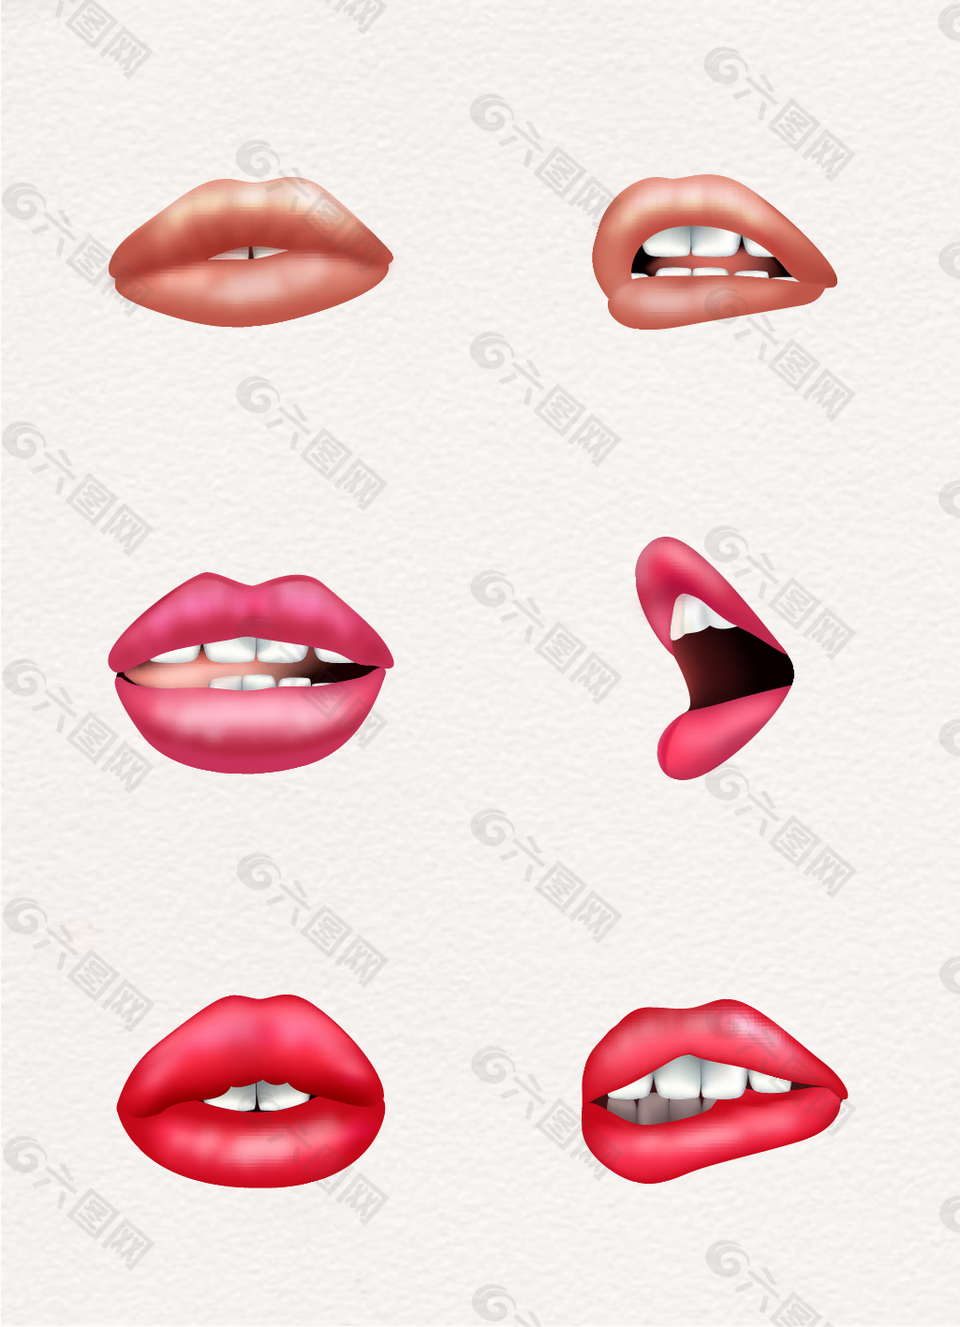 一组女性卡通嘴唇矢量素材